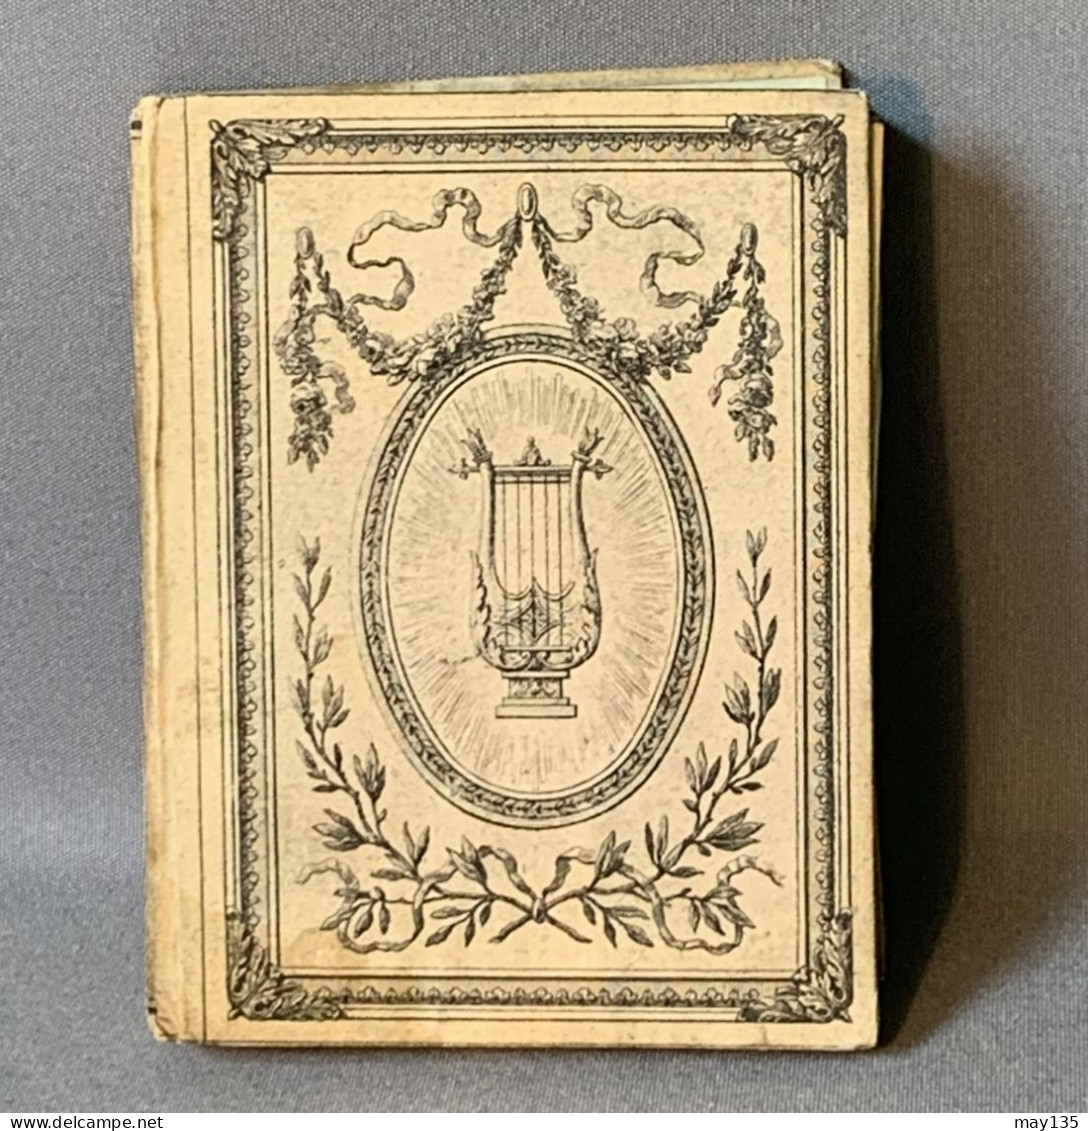 Anno 1837 - Nederlandsche Muzen - Almanak - J. Immerzeel , Junior Te Amsterdam - Oud